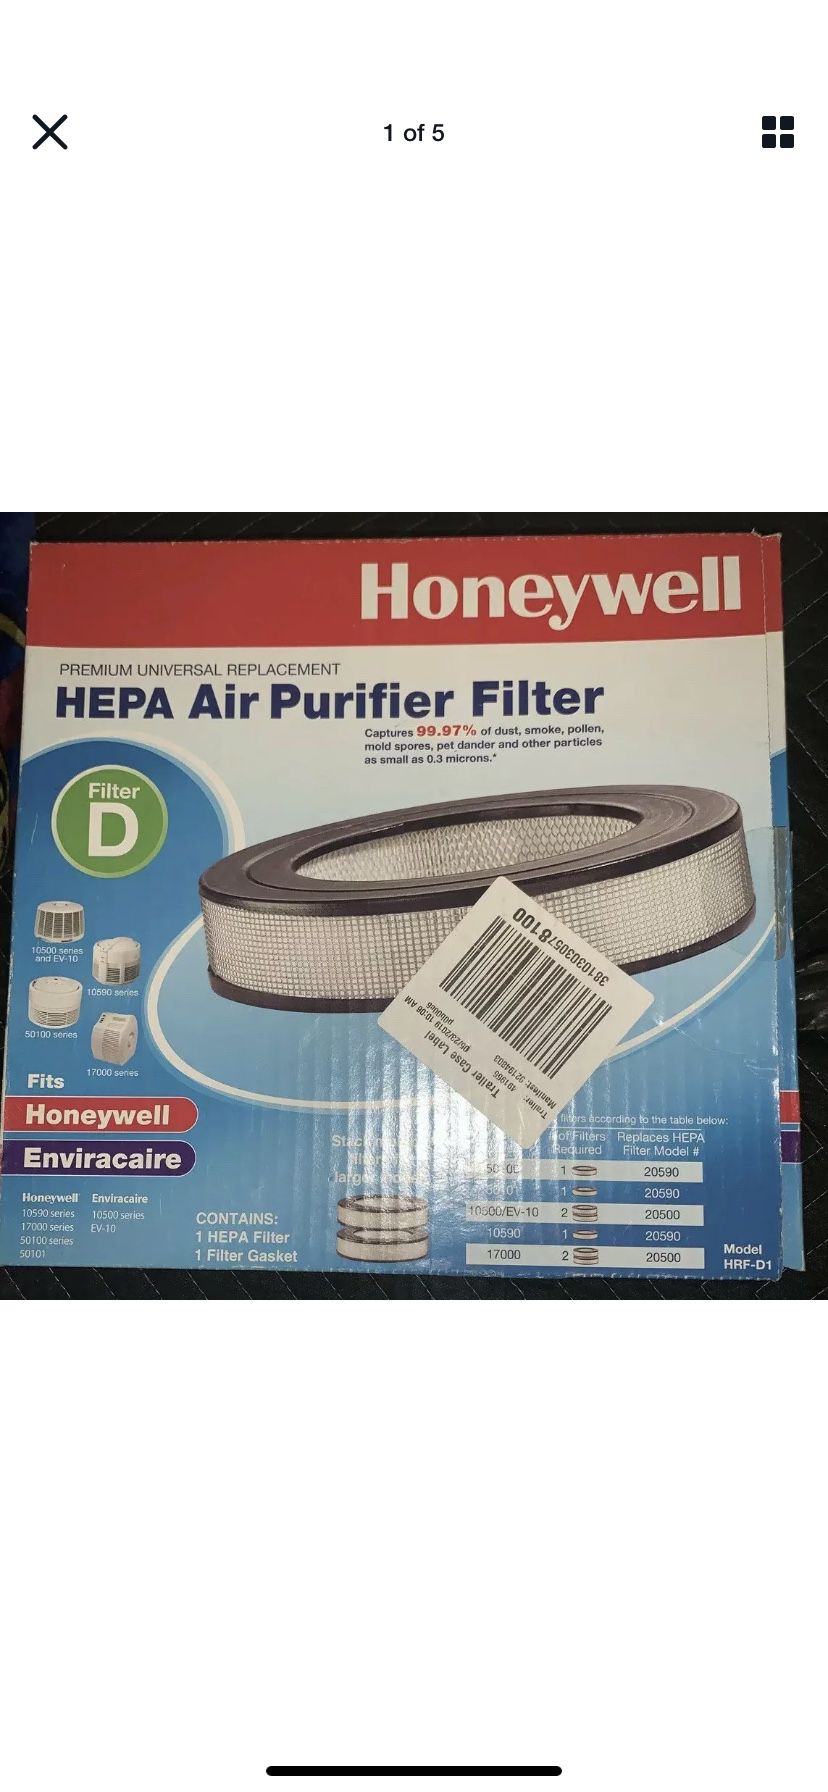 Honeywell Hrf-d1 HEPA Replacement Air Purifier Filter D